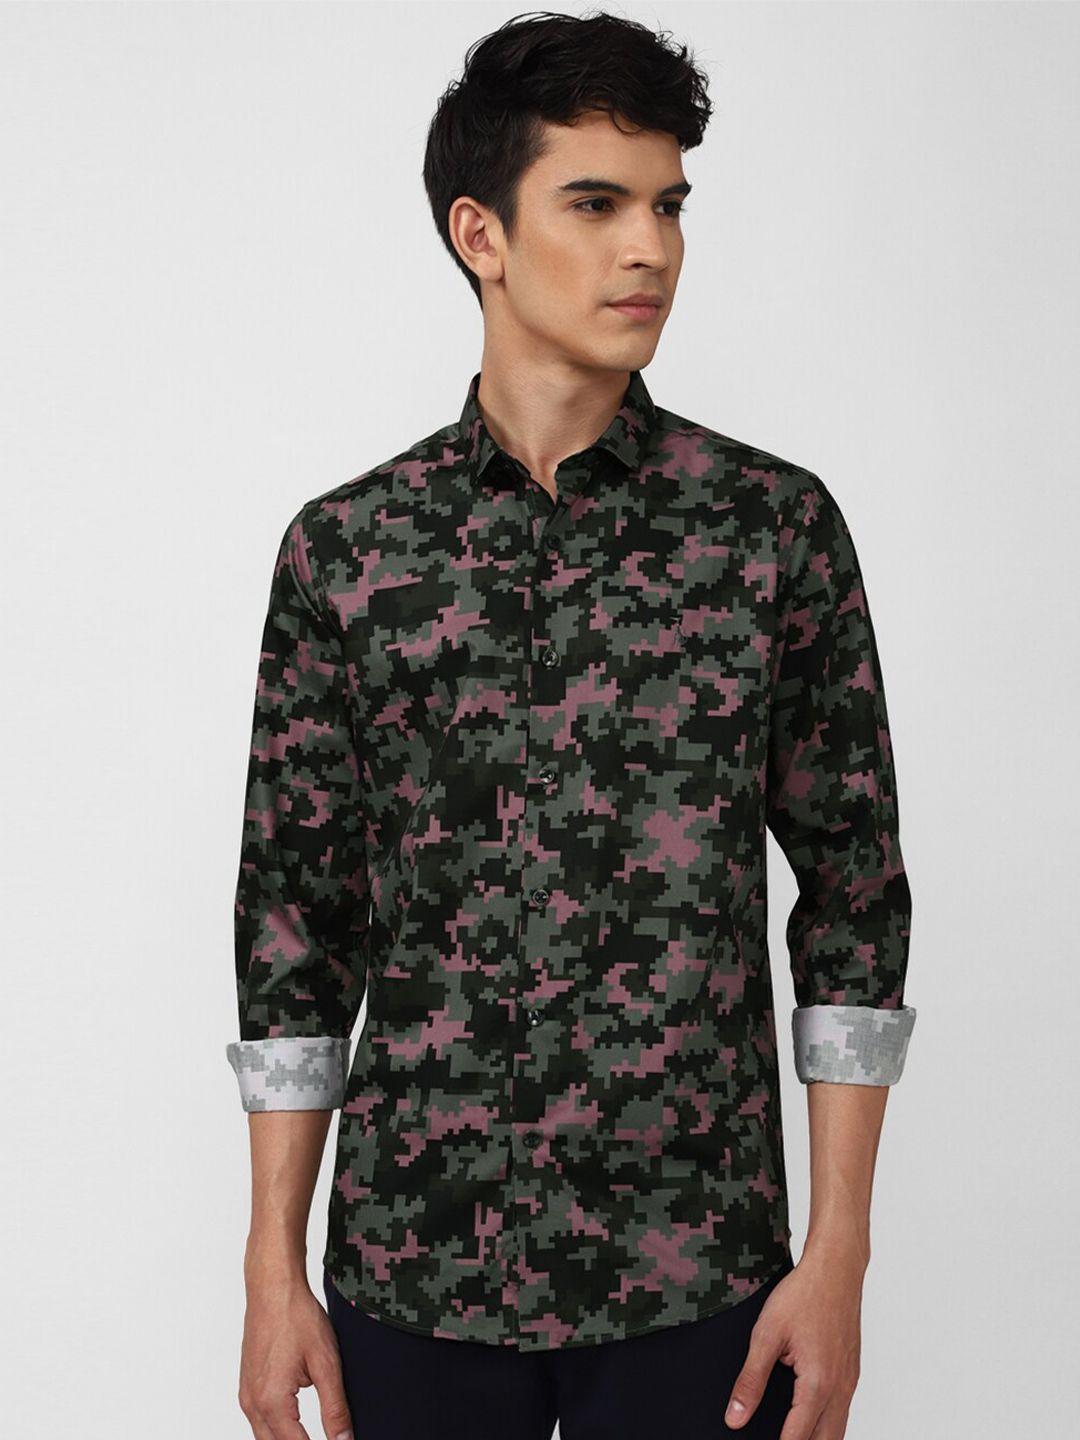 simon carter london men black & green slim fit floral printed casual shirt